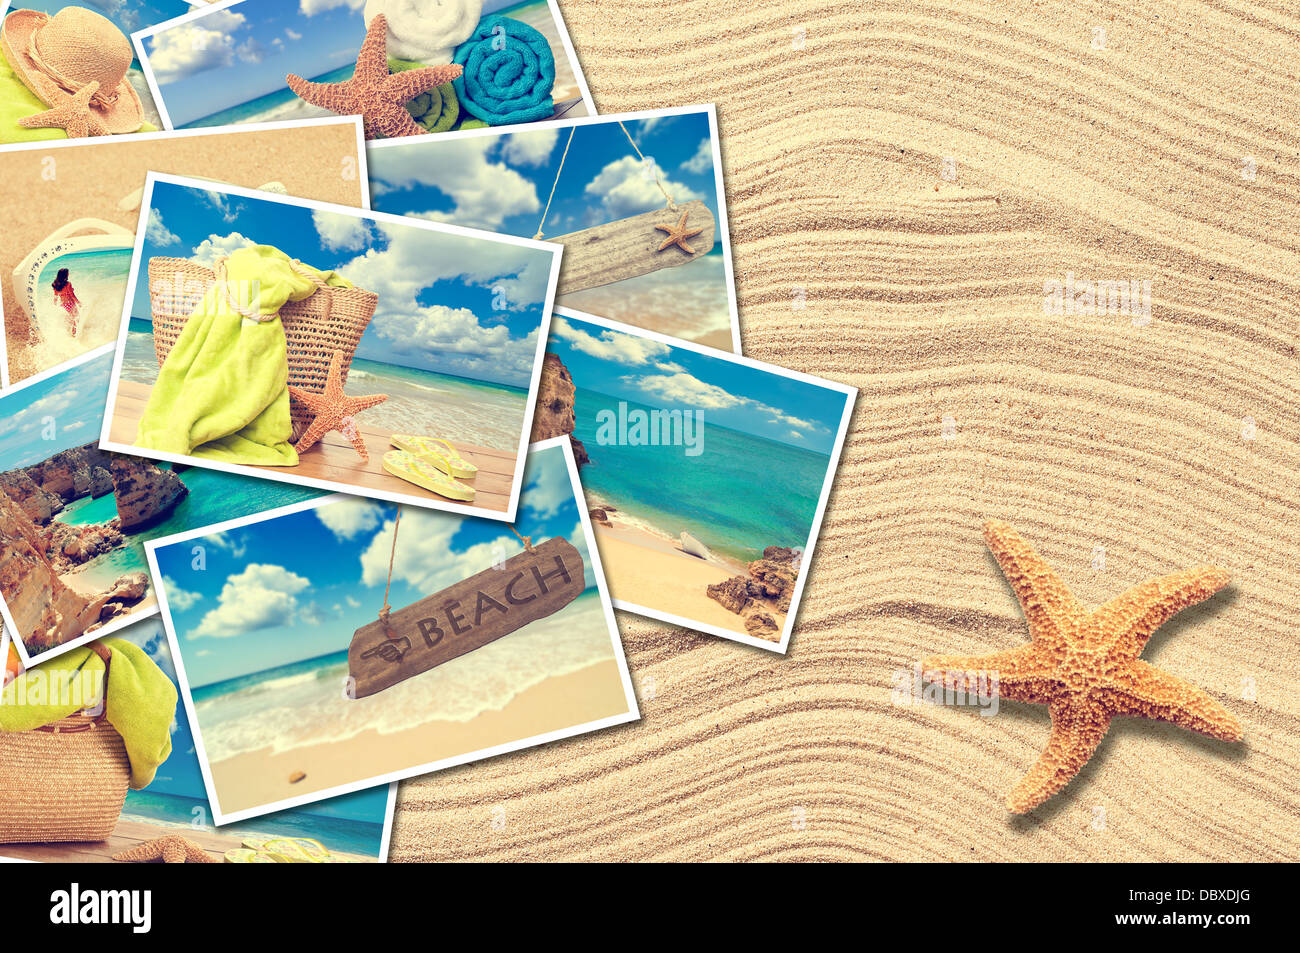 Cartoline vacanza su un sfondo sabbia con stella marina Foto Stock